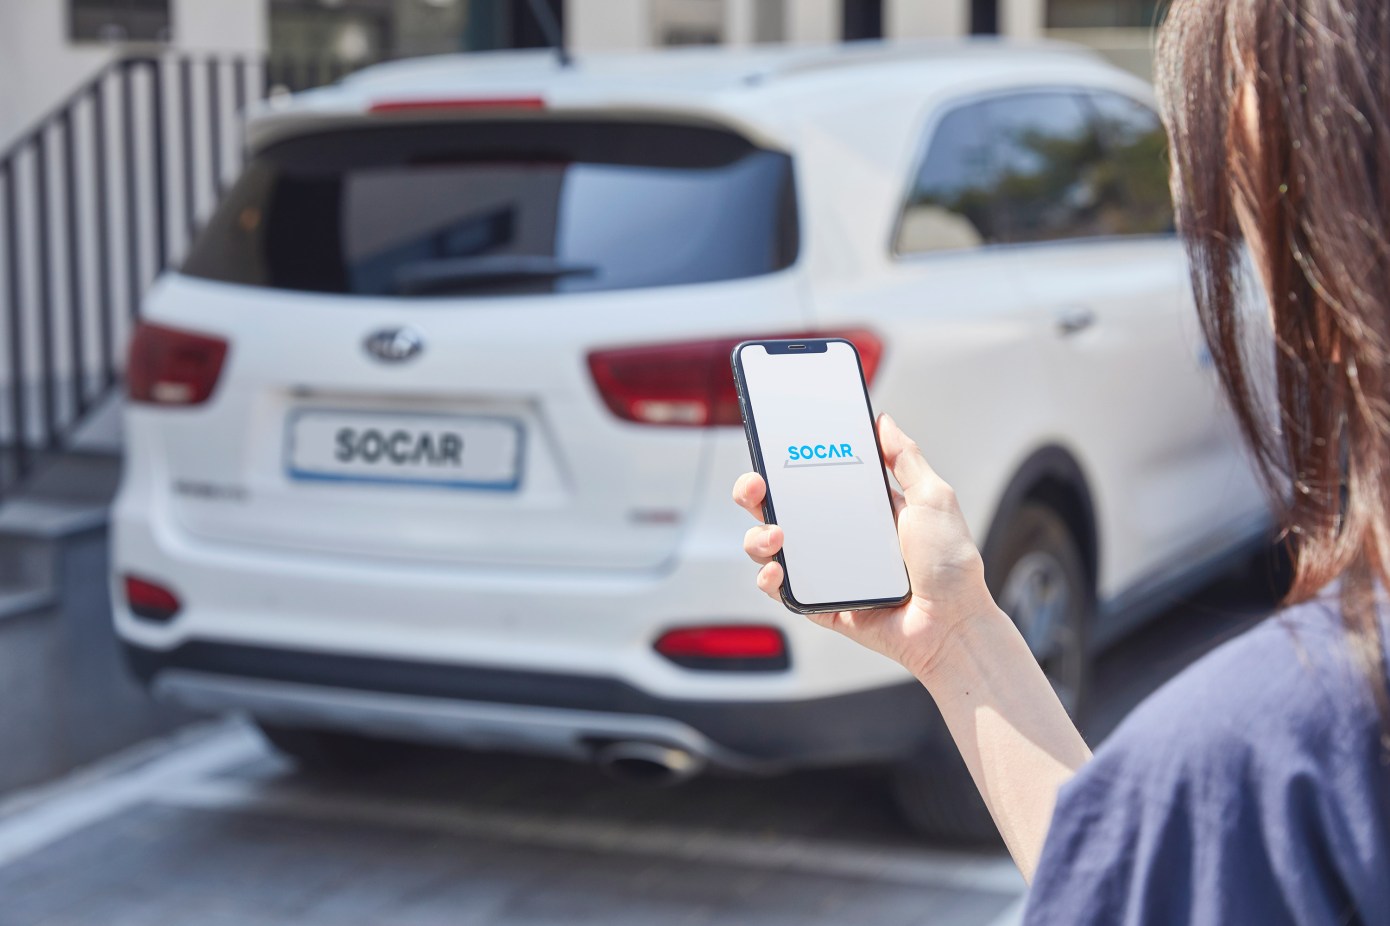 Korean car-sharing startup SOCAR has filed for an IPO